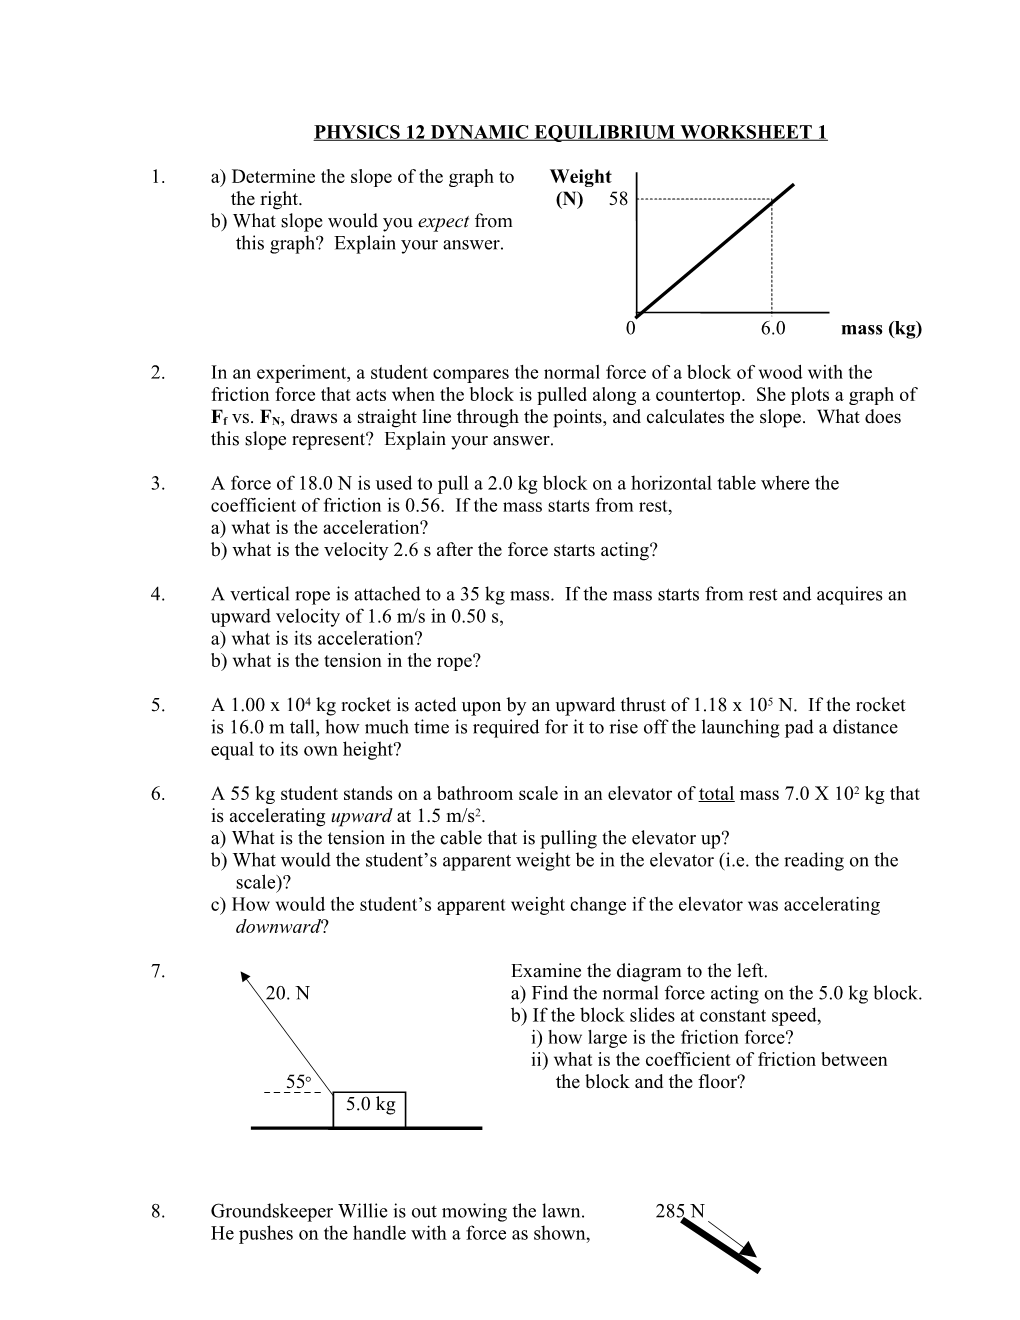 Physics 12 Dynamic Equilibrium Worksheet 1